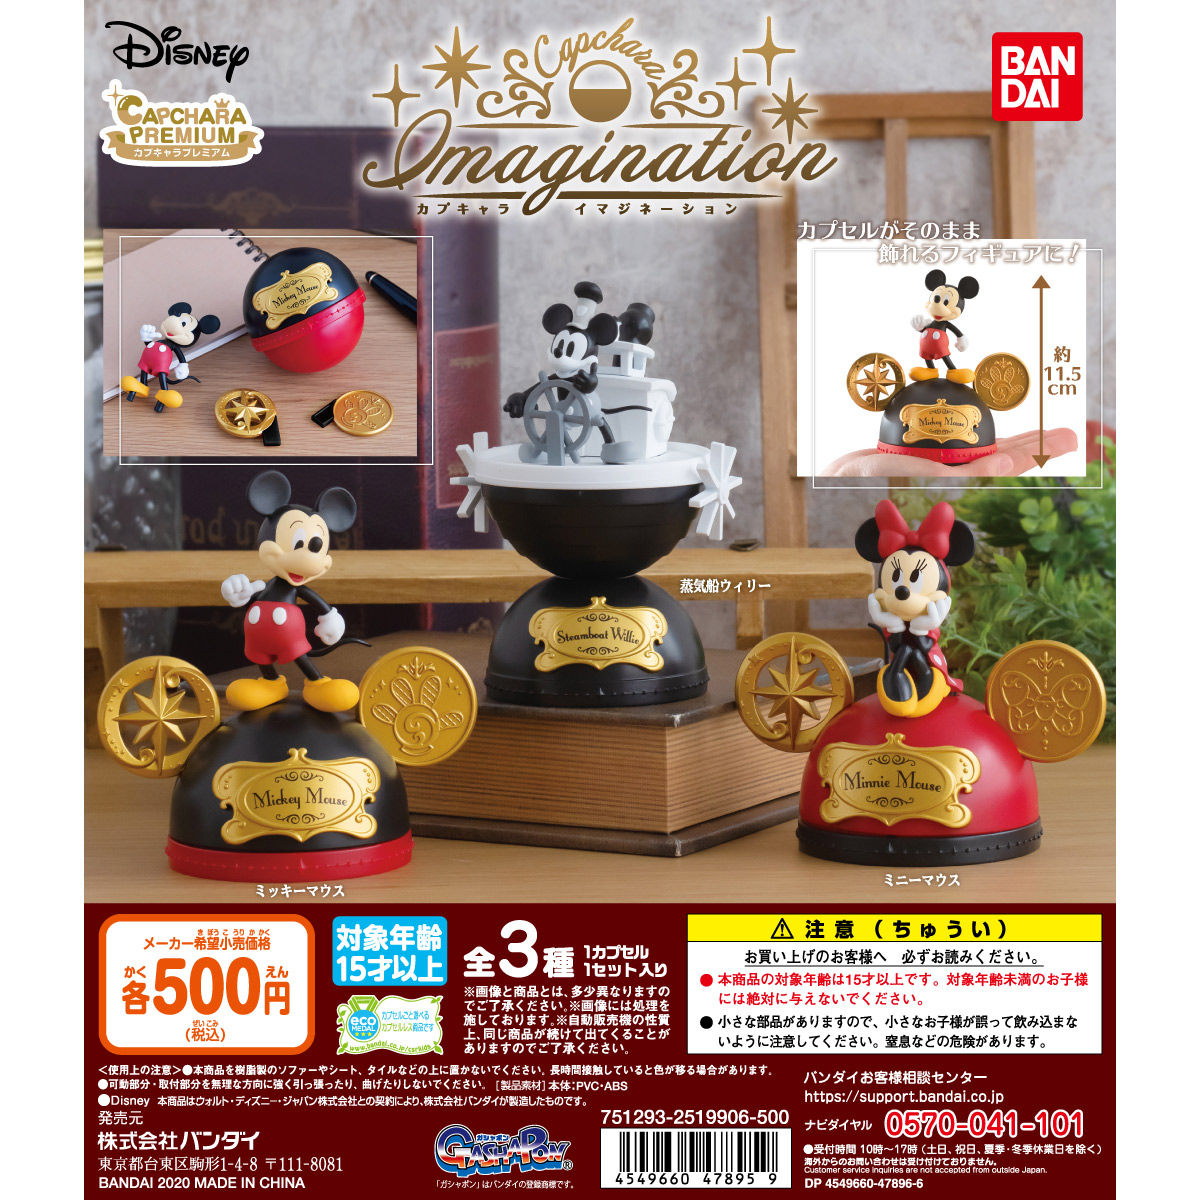 Disney カプキャライマジネーション ディズニーキャラクター 趣味 コレクション バンダイナムコグループ公式通販サイト